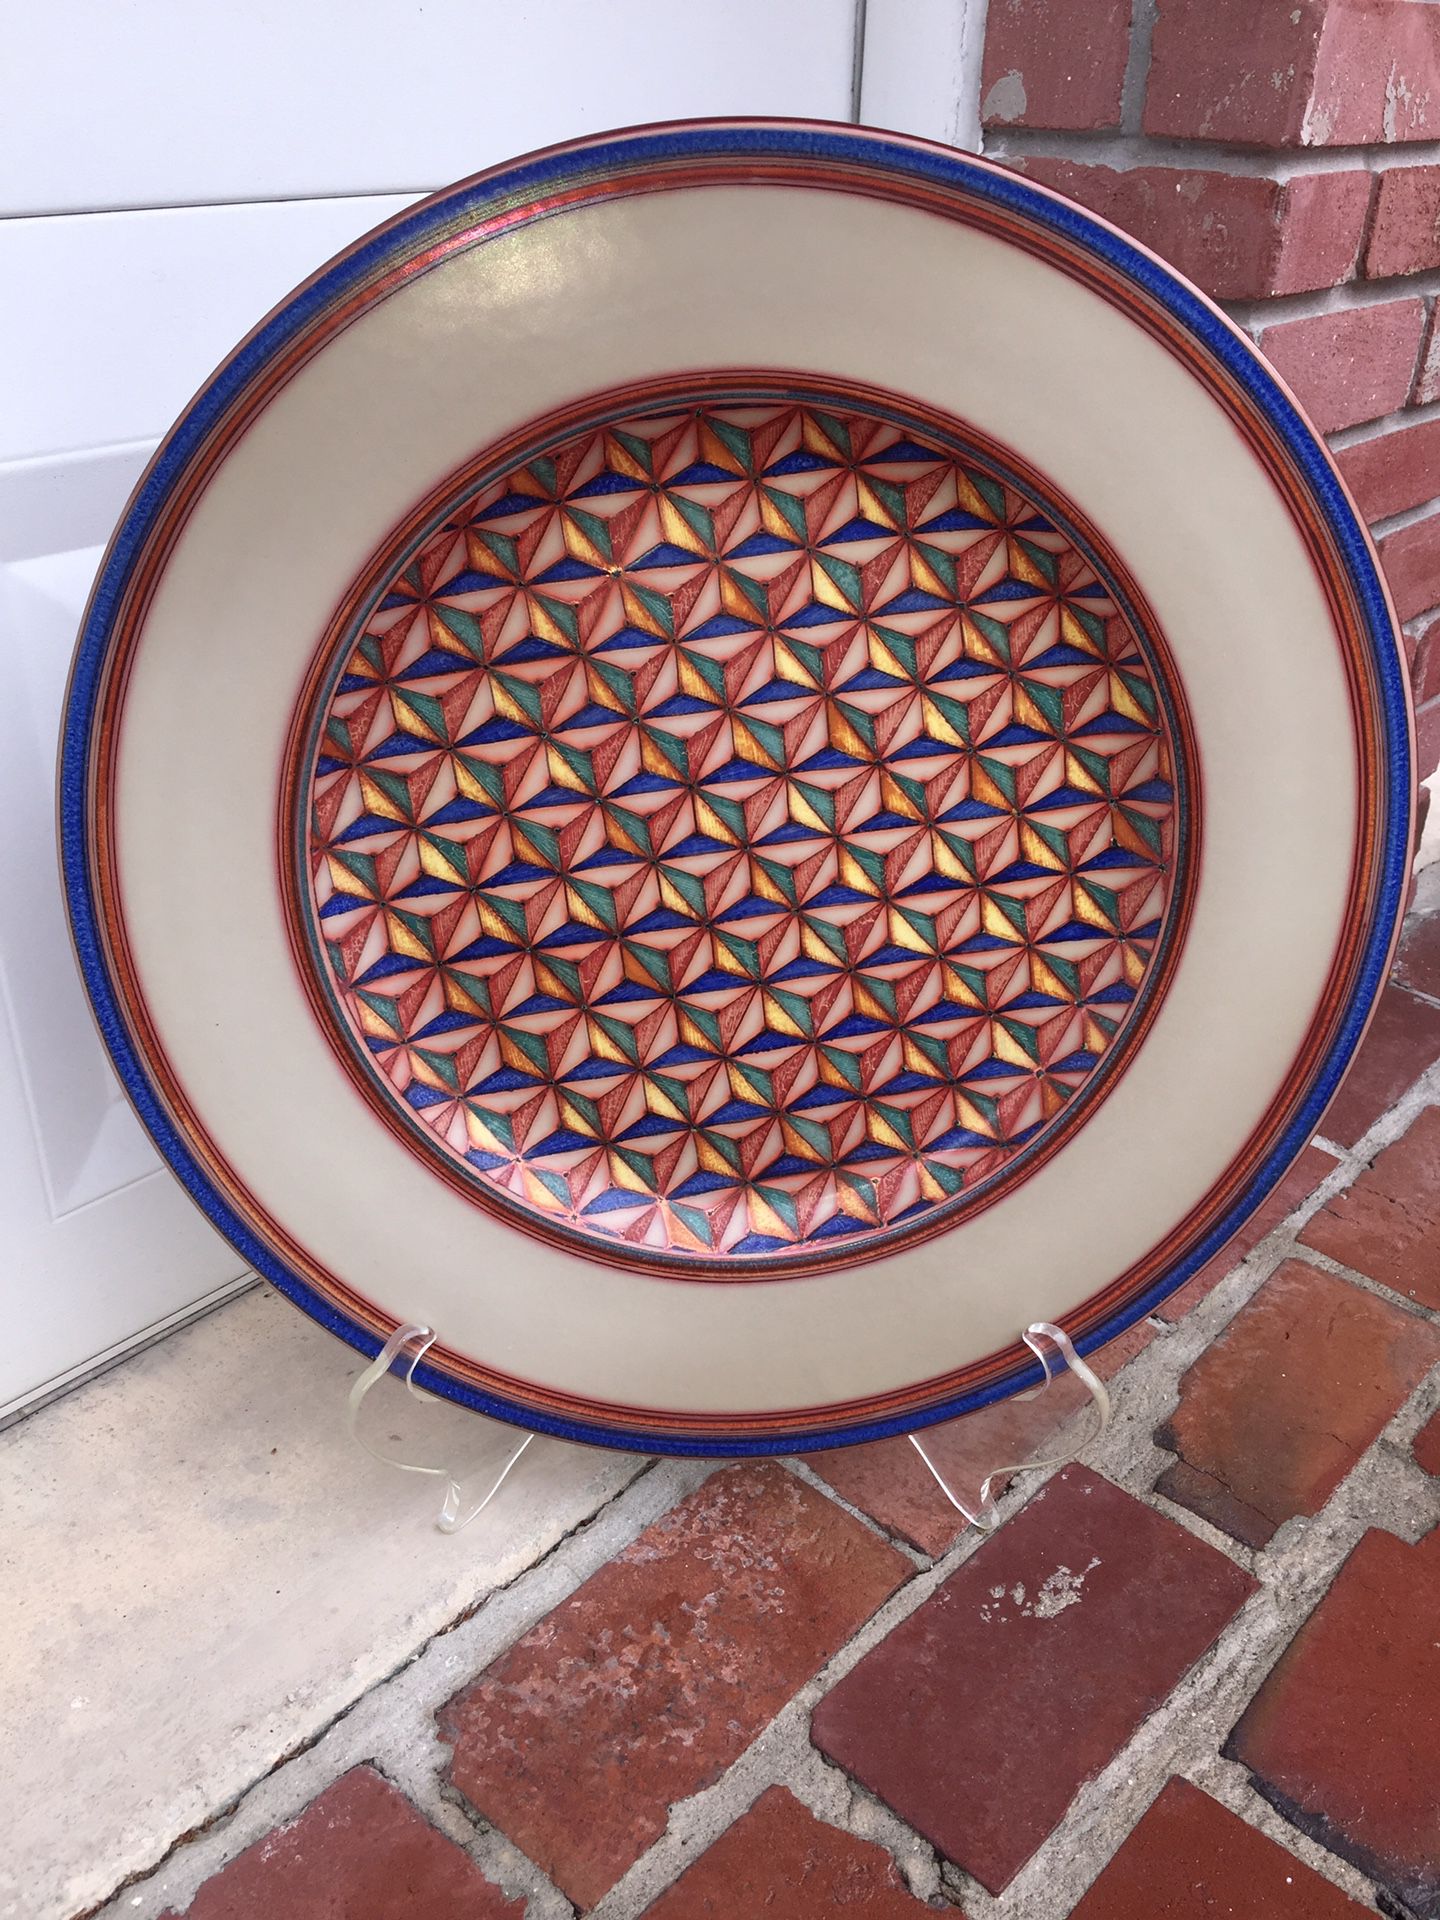 Vignoli original Large 22” Decorative ceramic plate MADE IN ITALY 🇮🇹